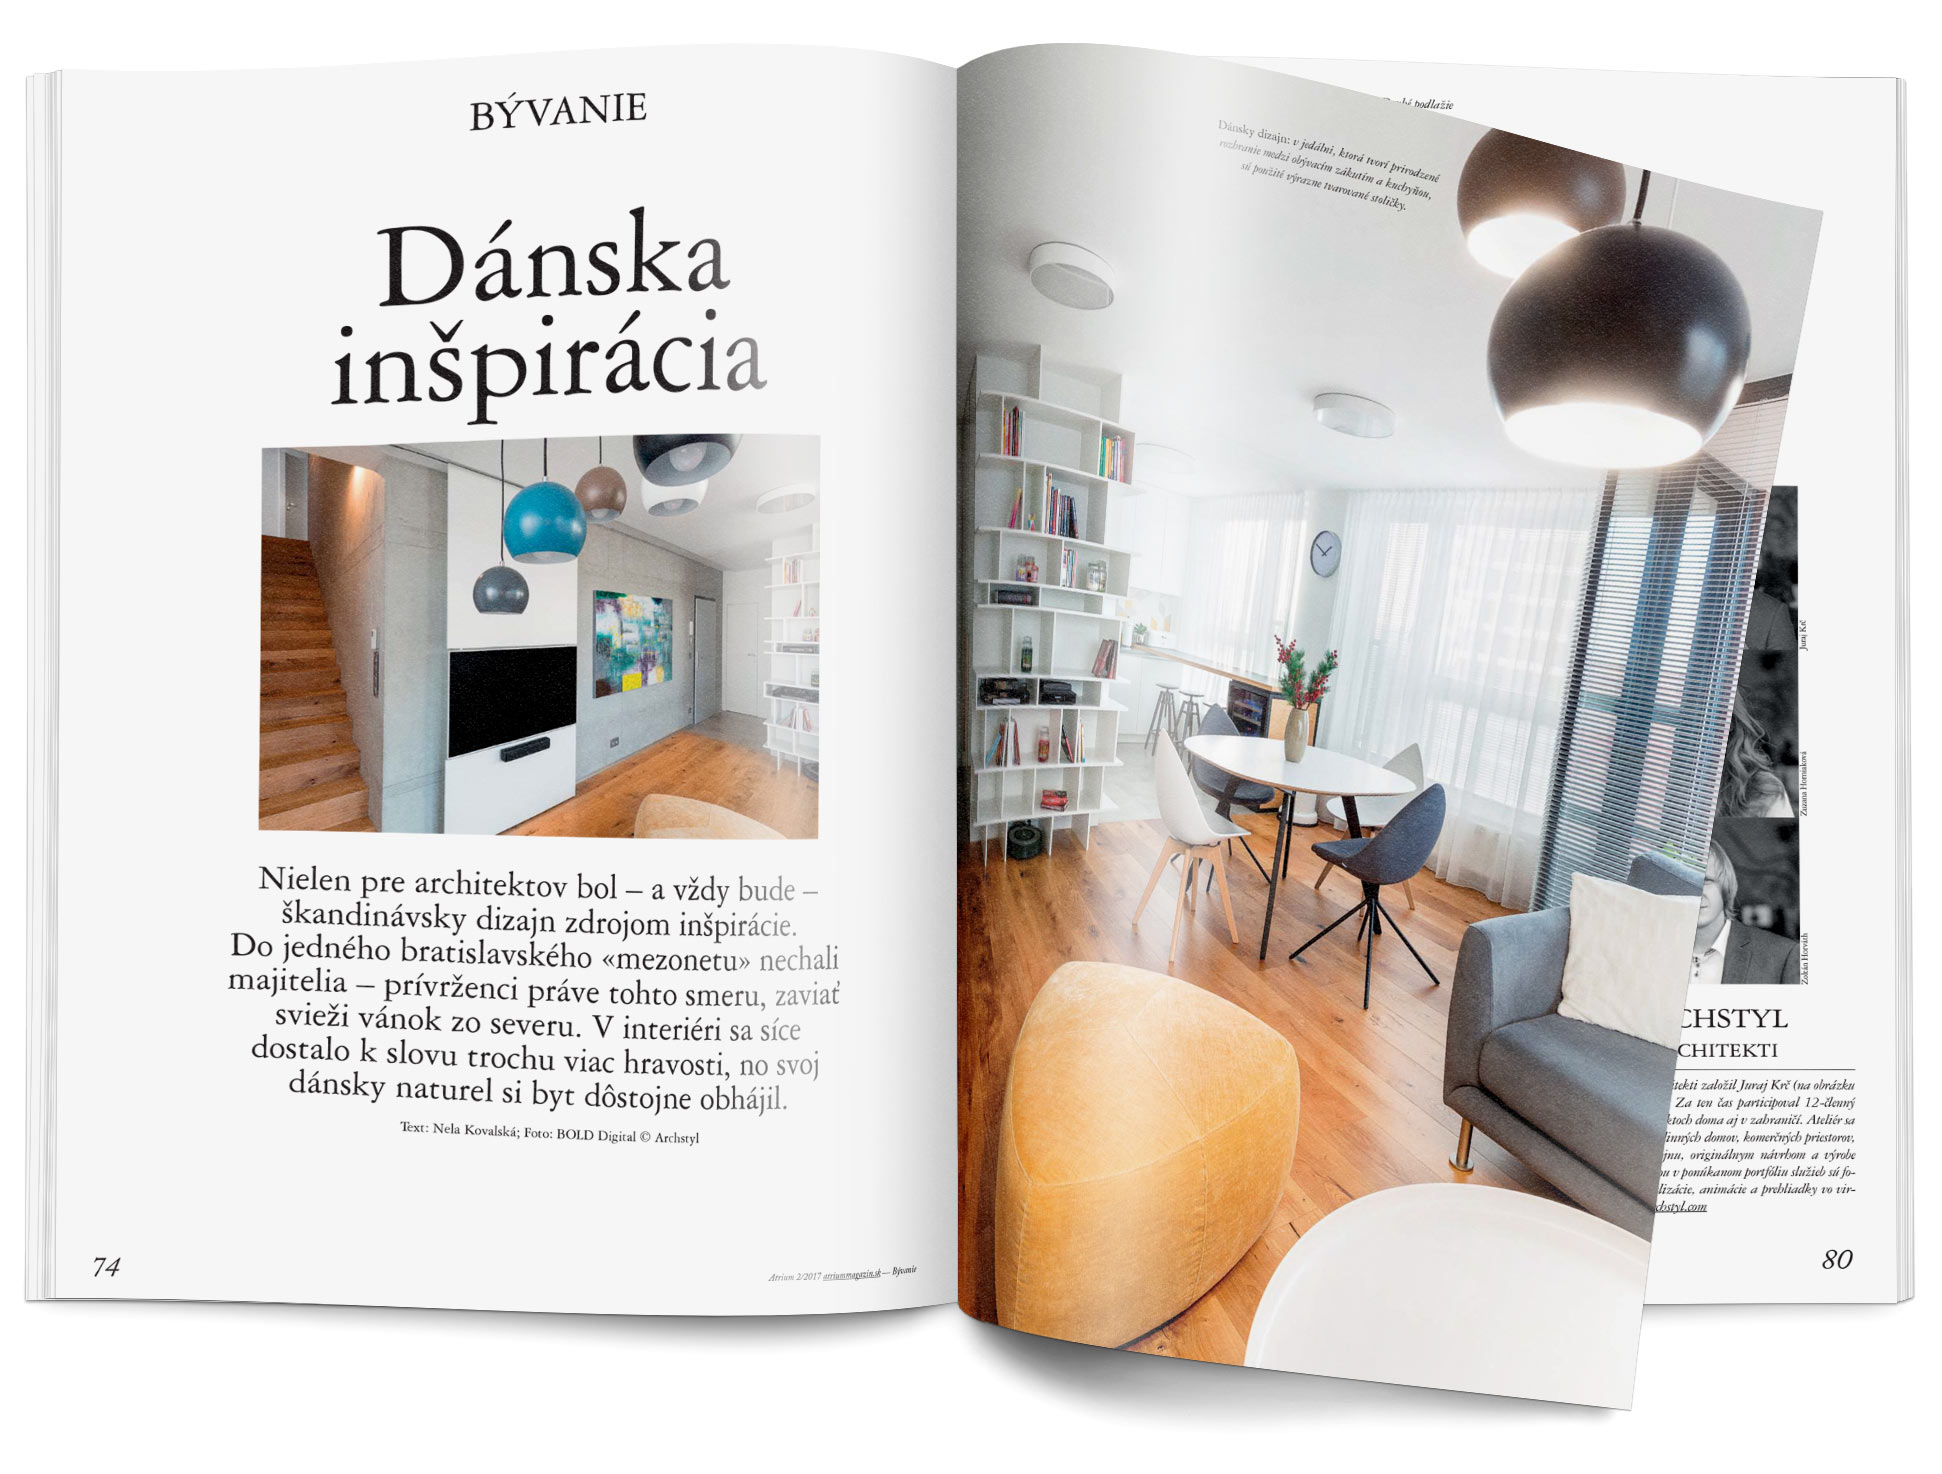 Atrium, Danish inspiration, interior, design